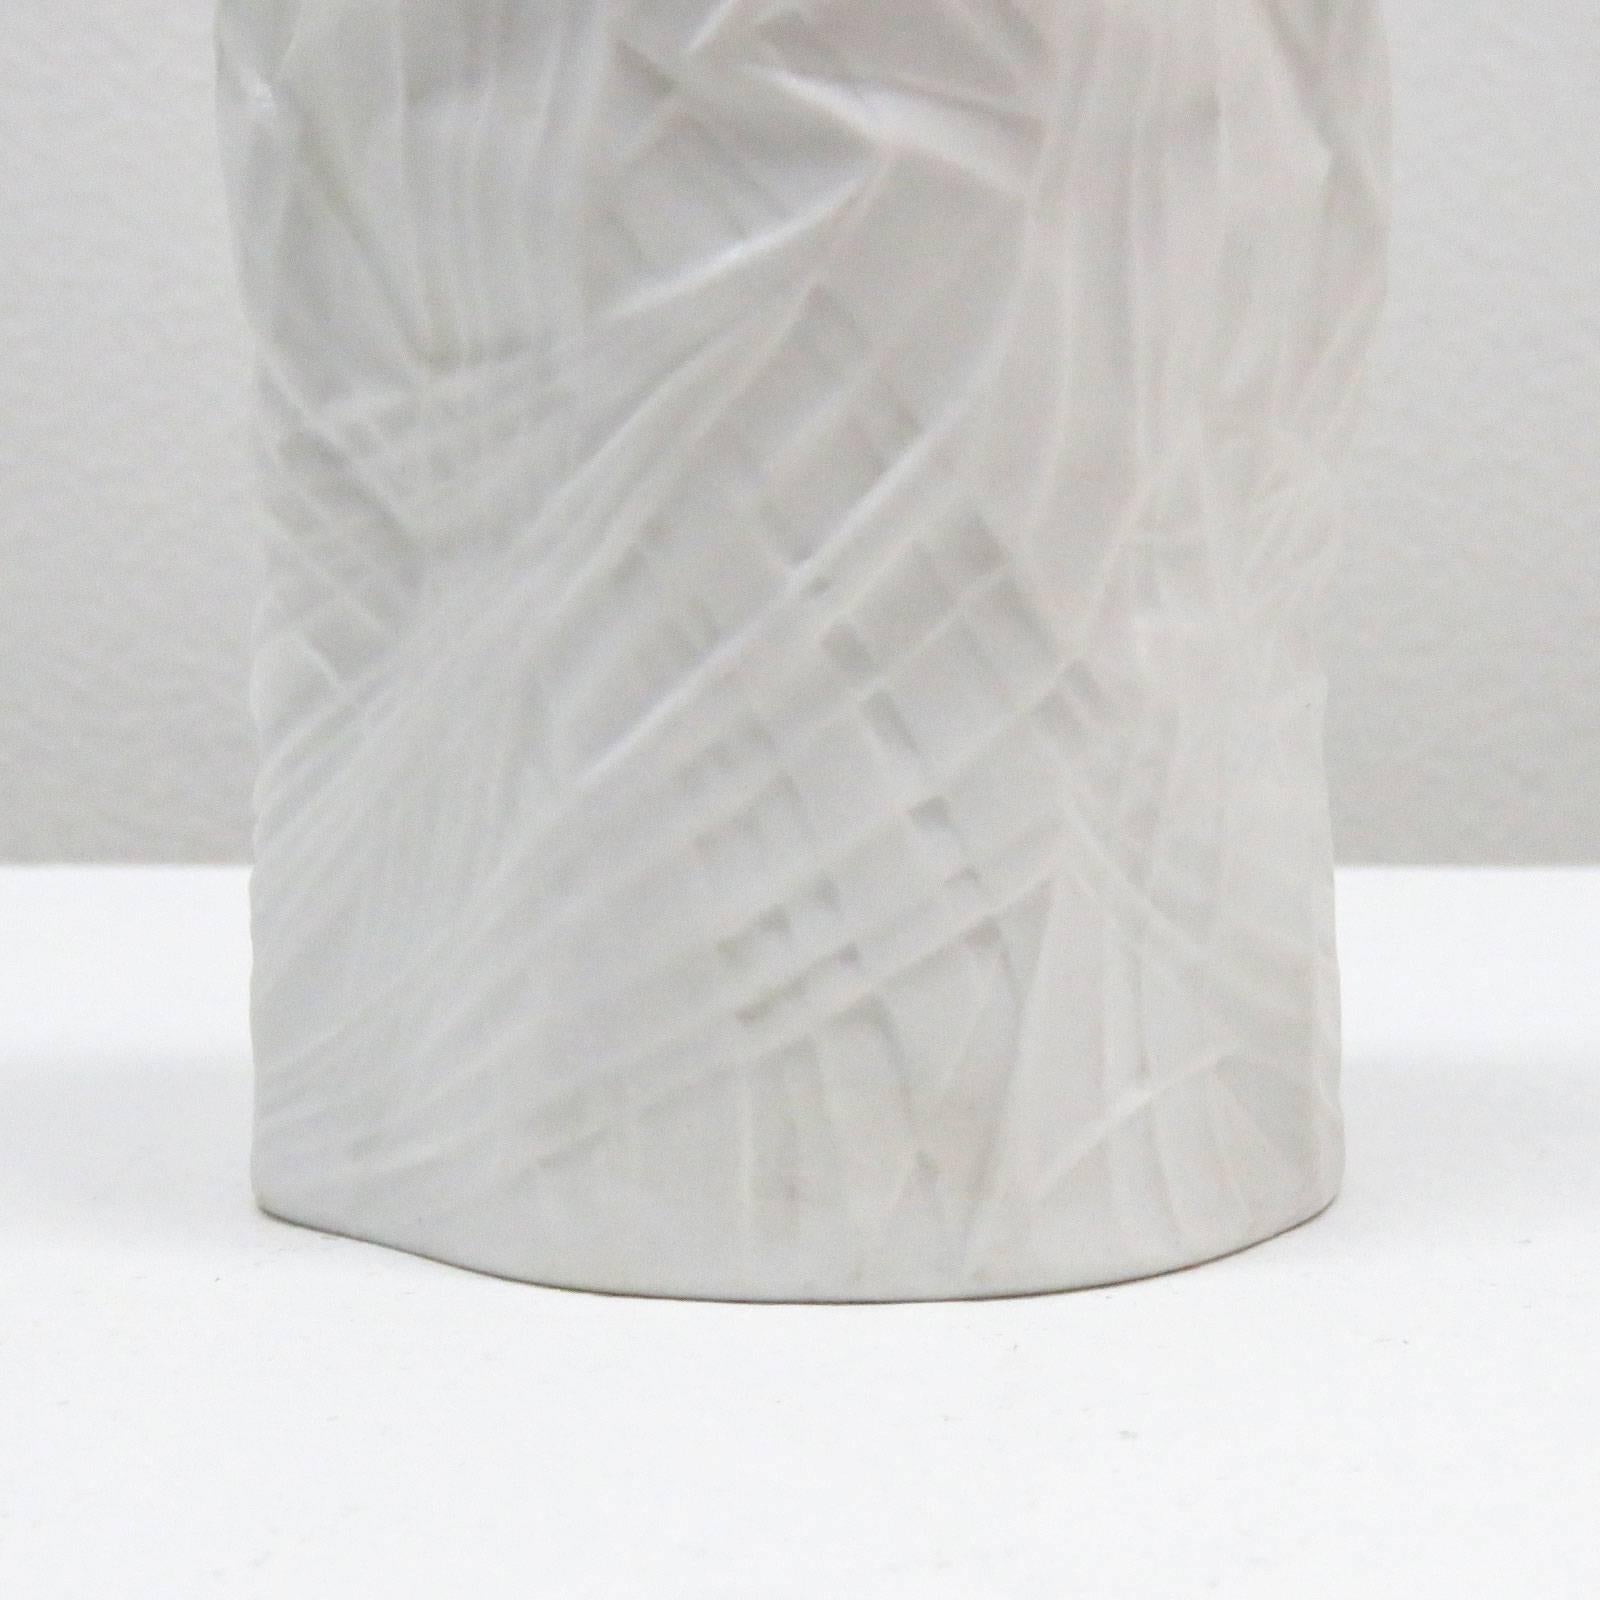 Scandinavian Modern Martin Freyer Vase for Rosenthal, No. 2991